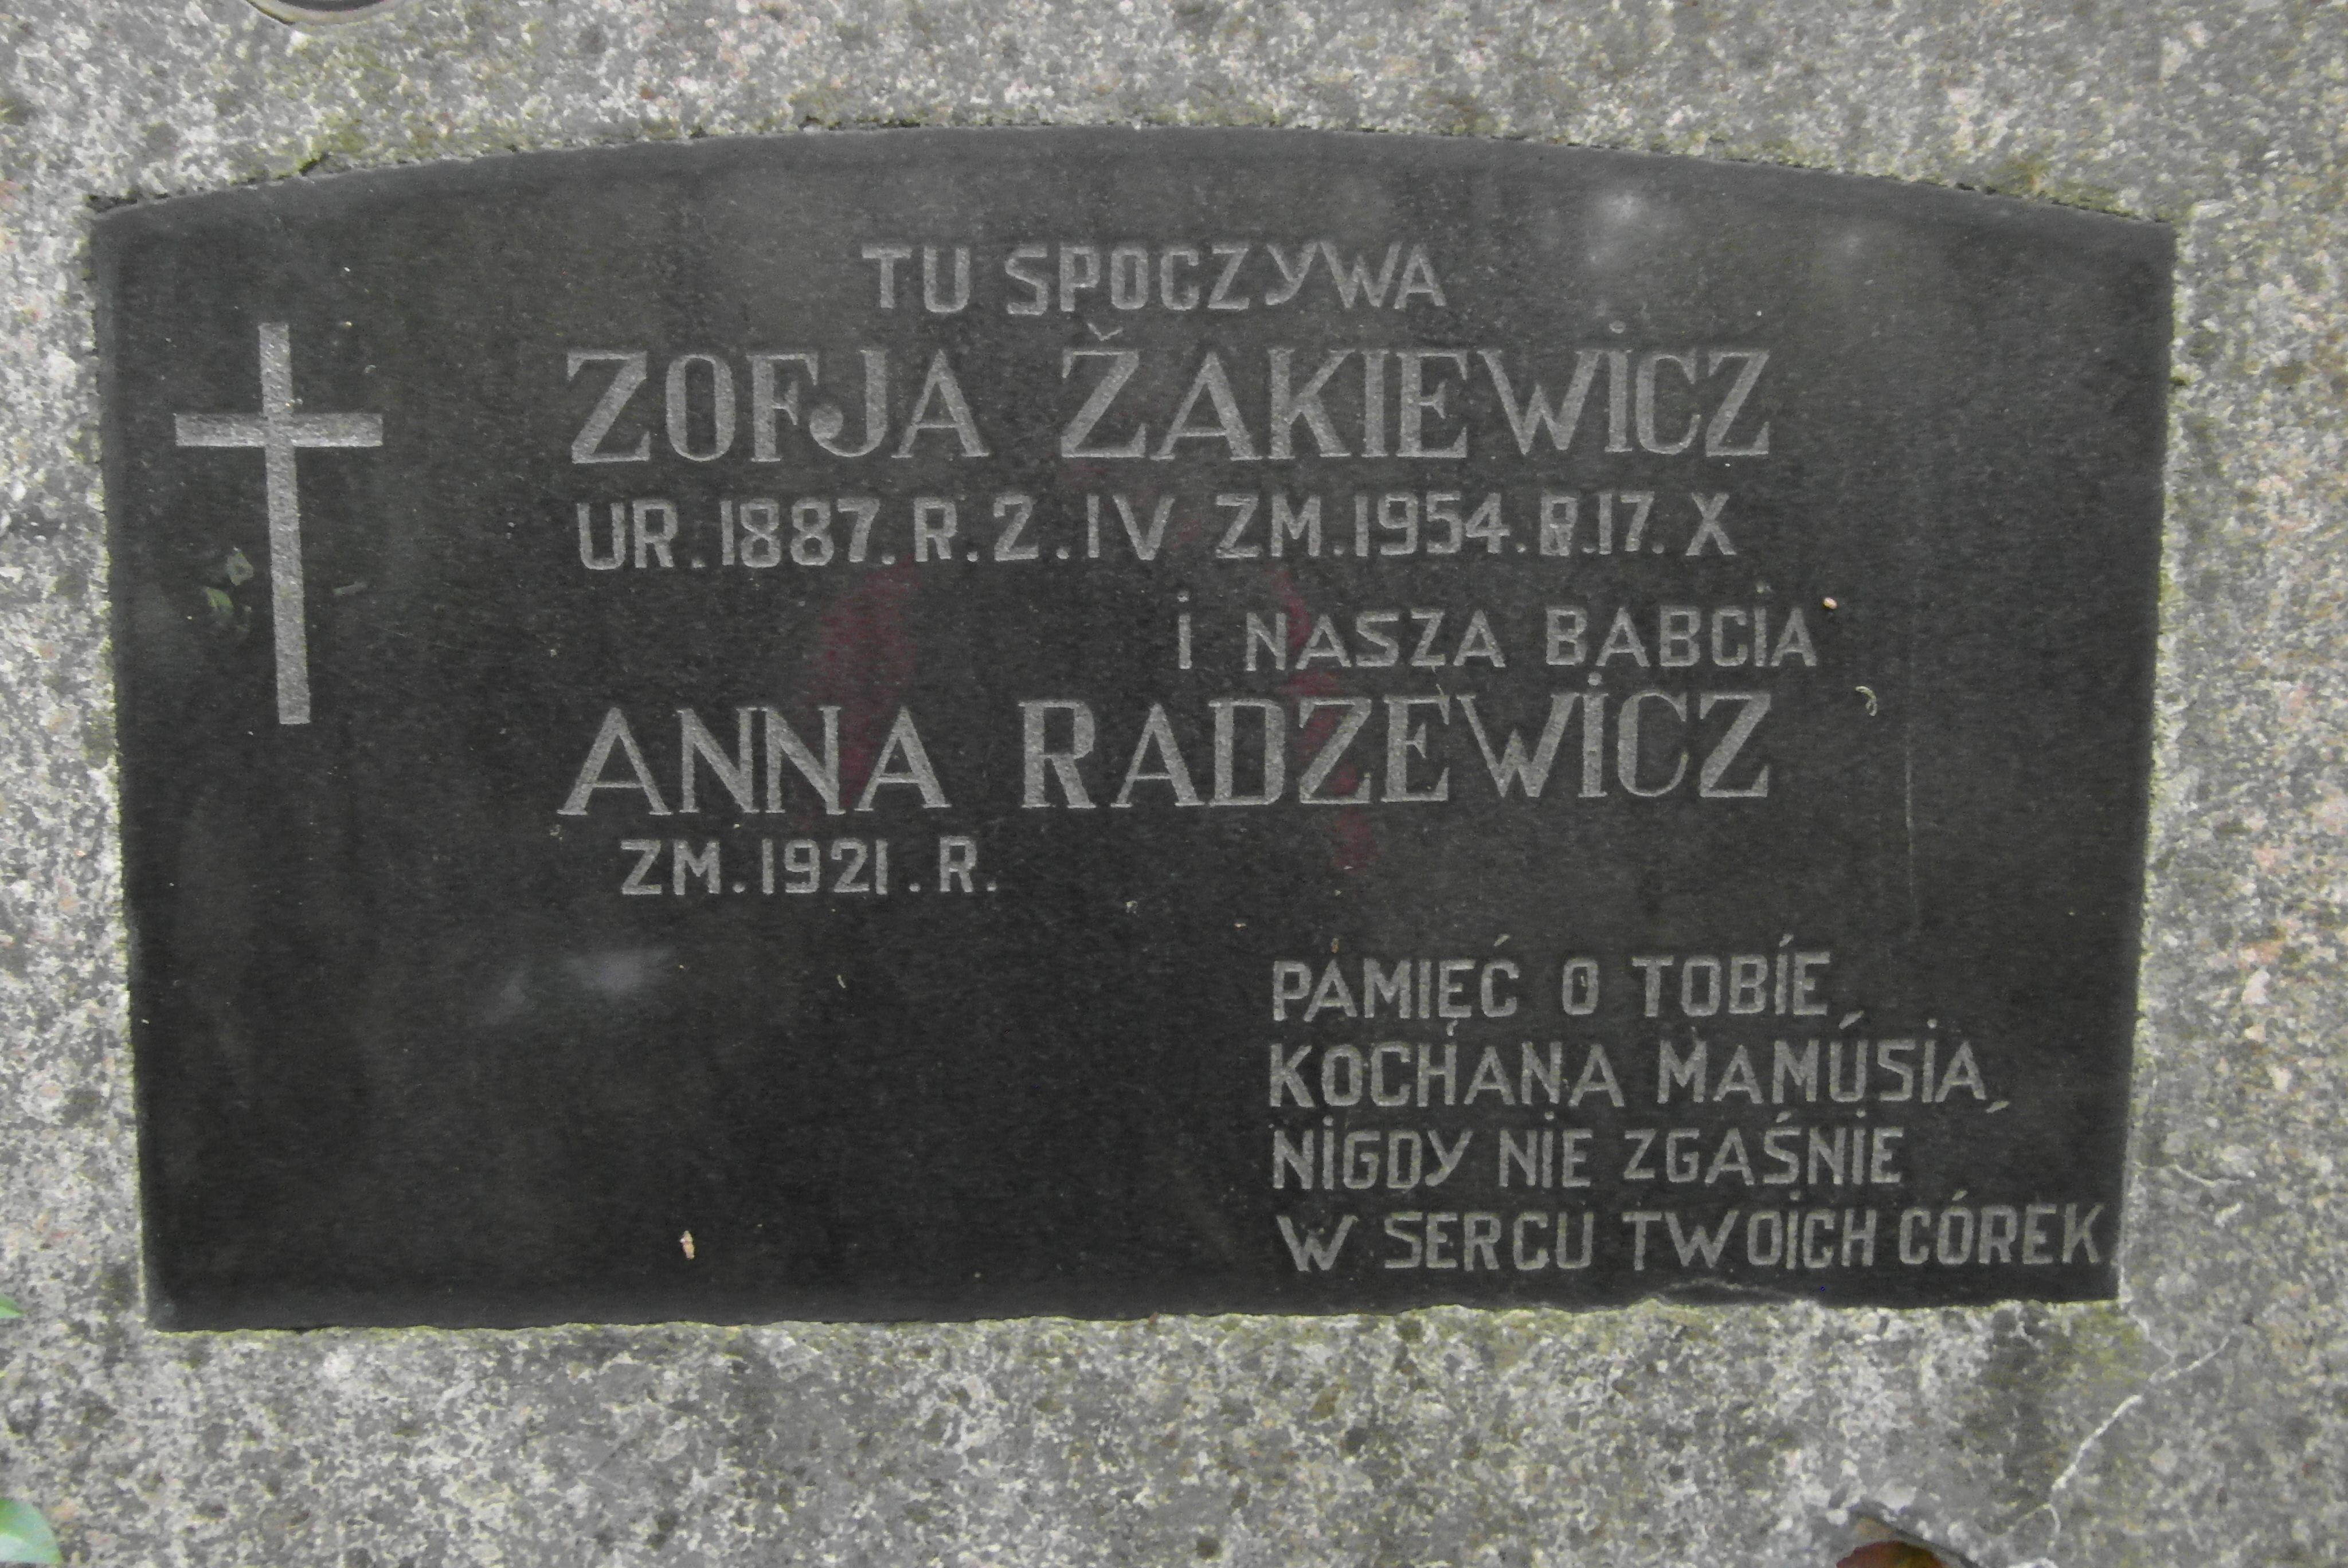 Inscription from the gravestone of Anna Radziewicz, Zofia Żakiewicz, St Michael's cemetery in Riga, as of 2021.